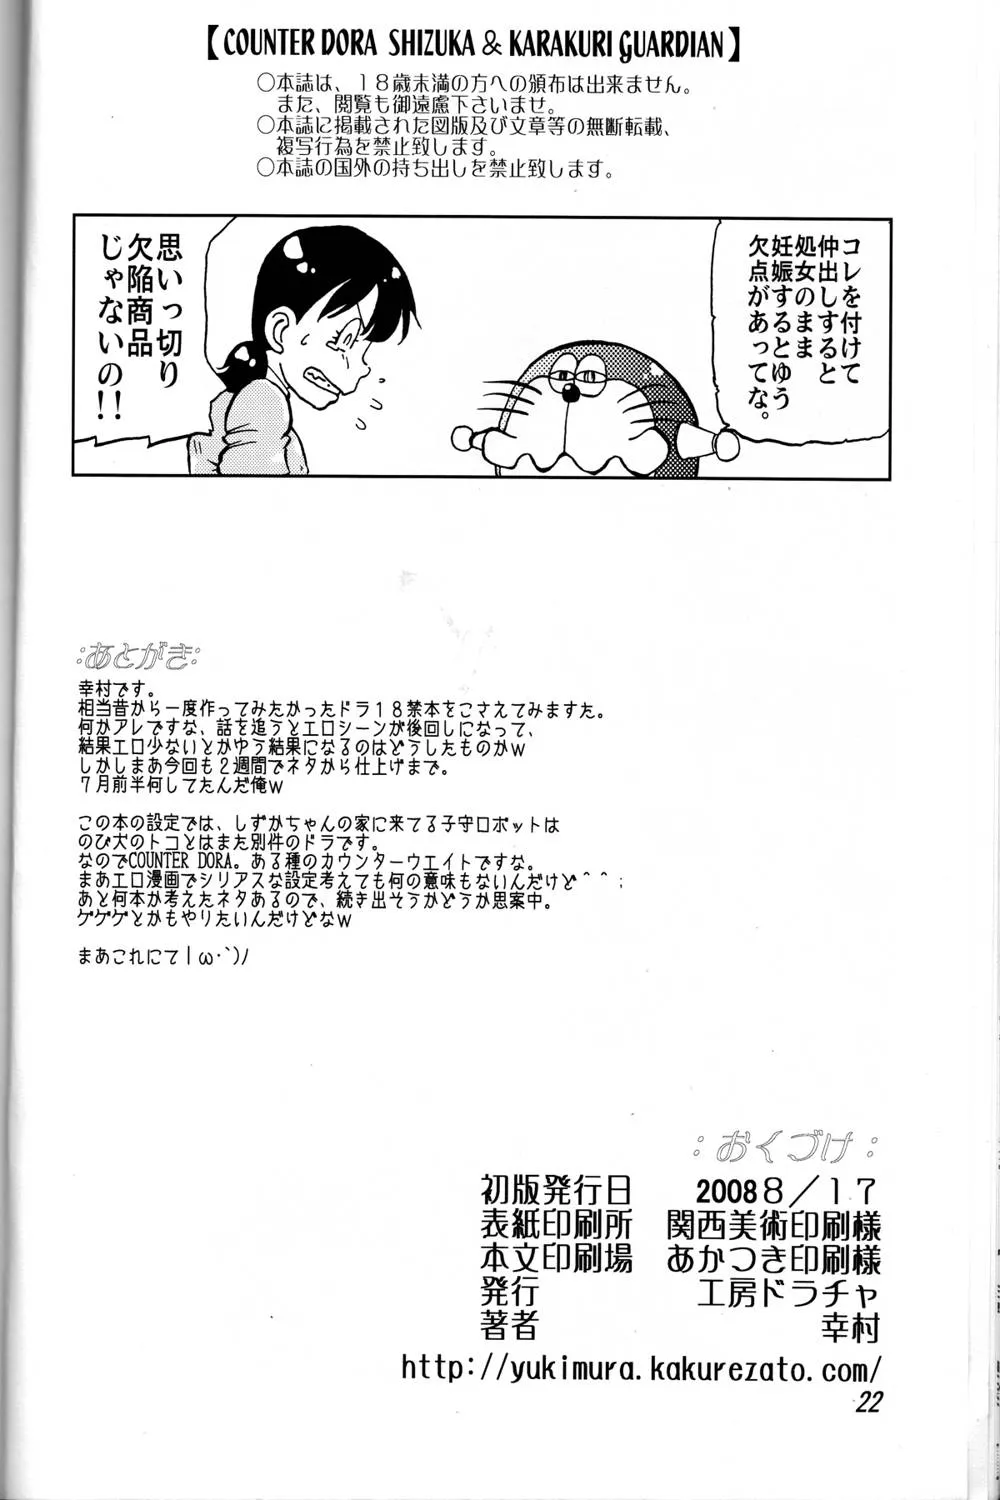 DigimonDoraemon,Shizuka & Kurikuri Guardian [Japanese][第22页]